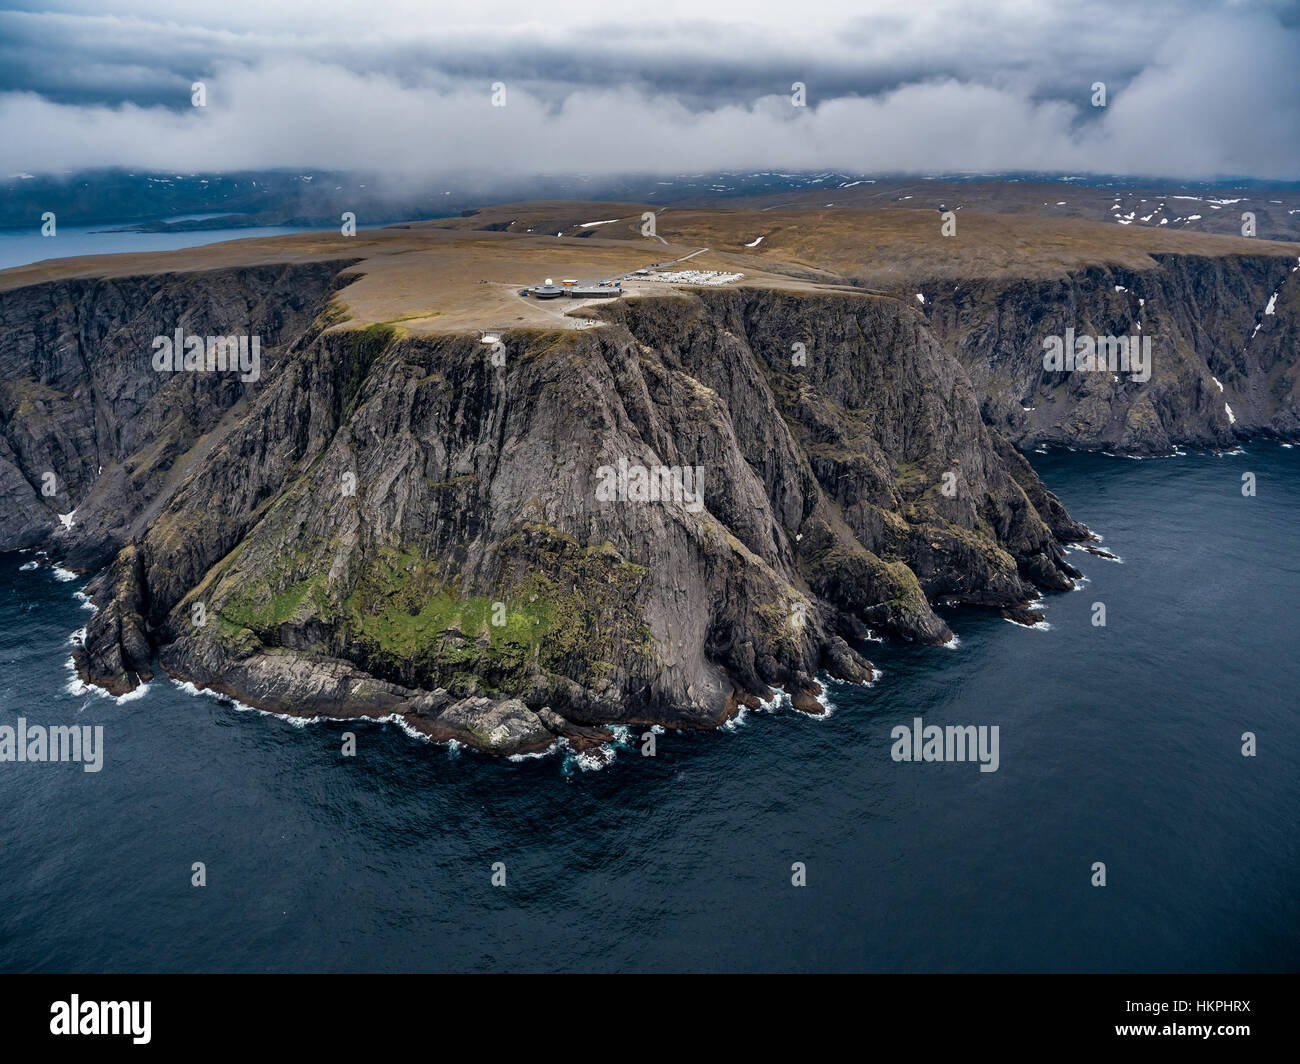 Mare di Barents costa Nord Cape (Nordkapp) nel nord della Norvegia la fotografia aerea. Foto Stock